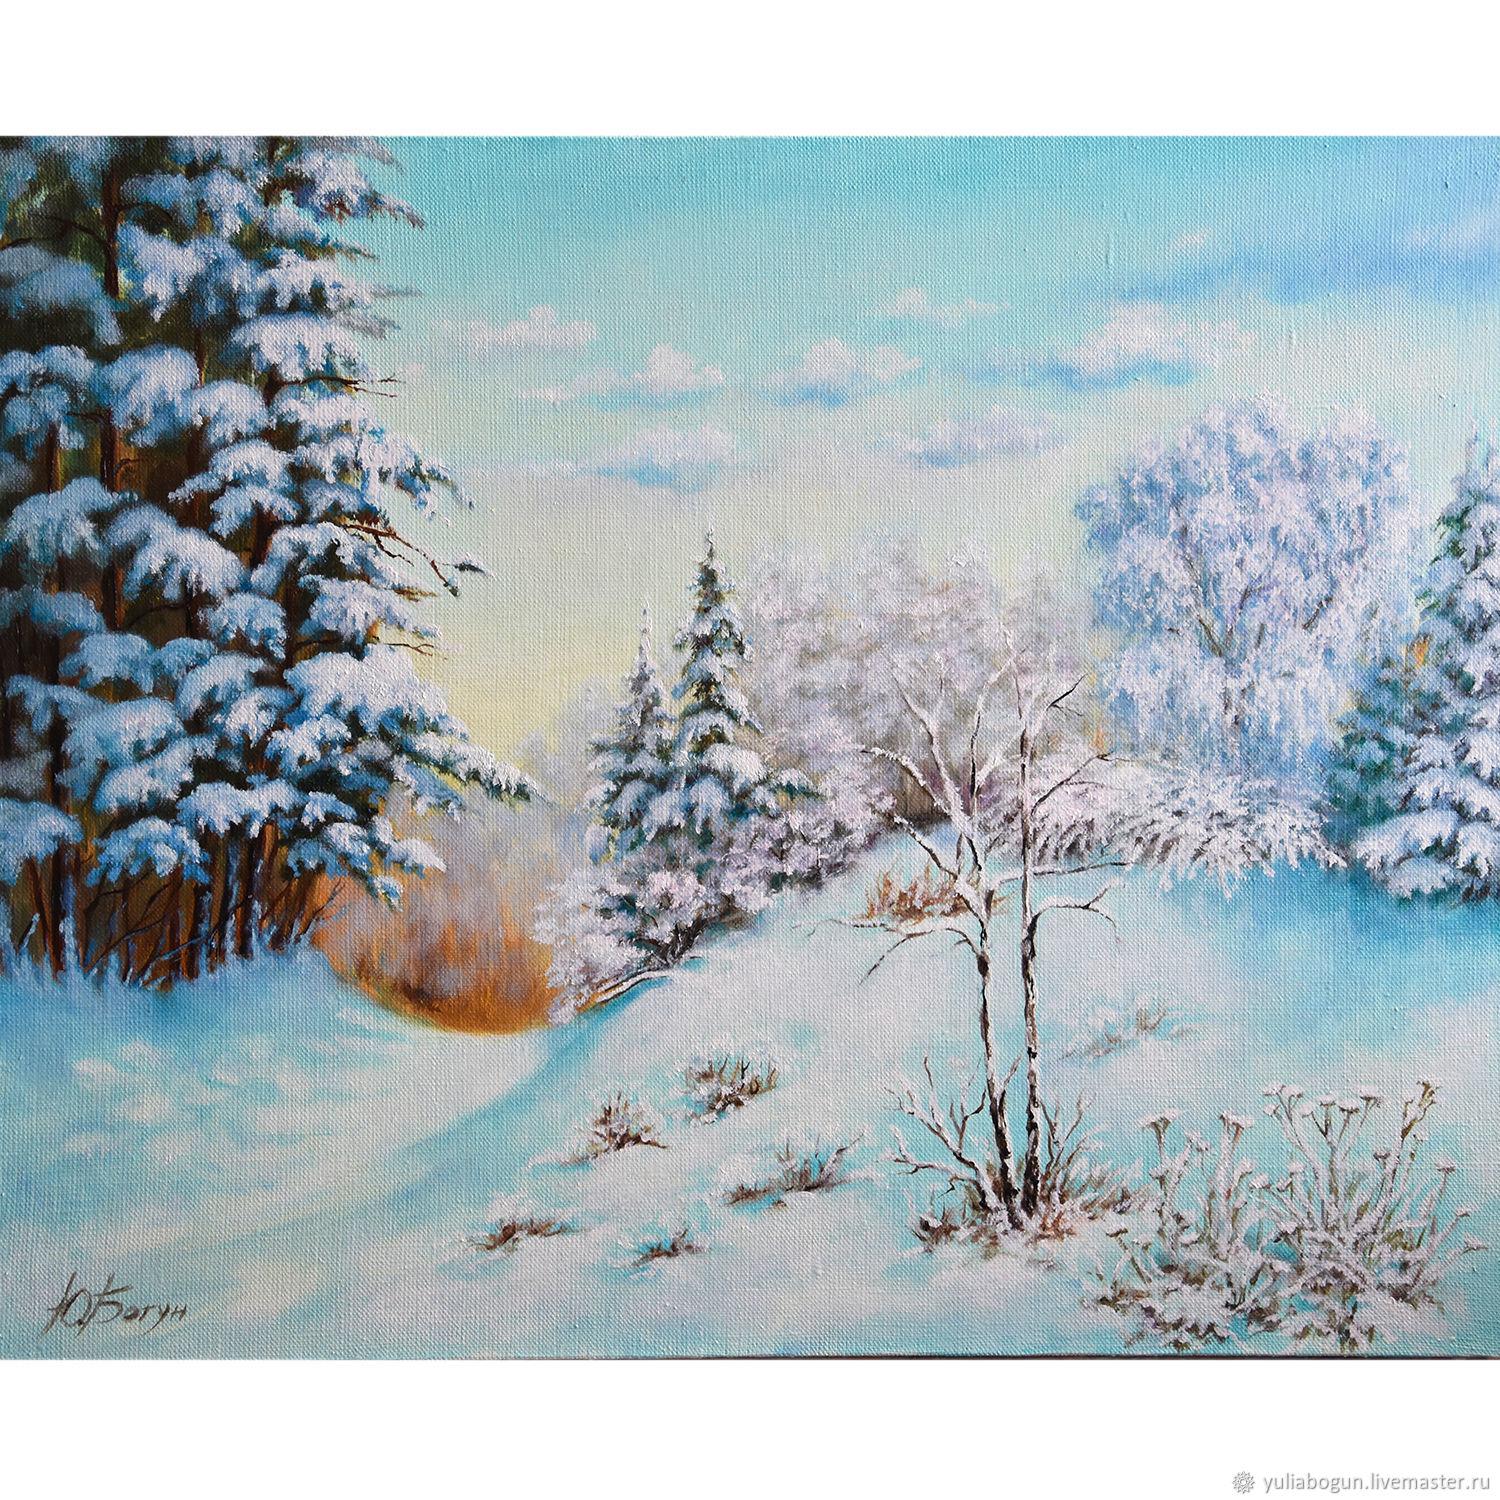 Русская зима» - художественная выставка